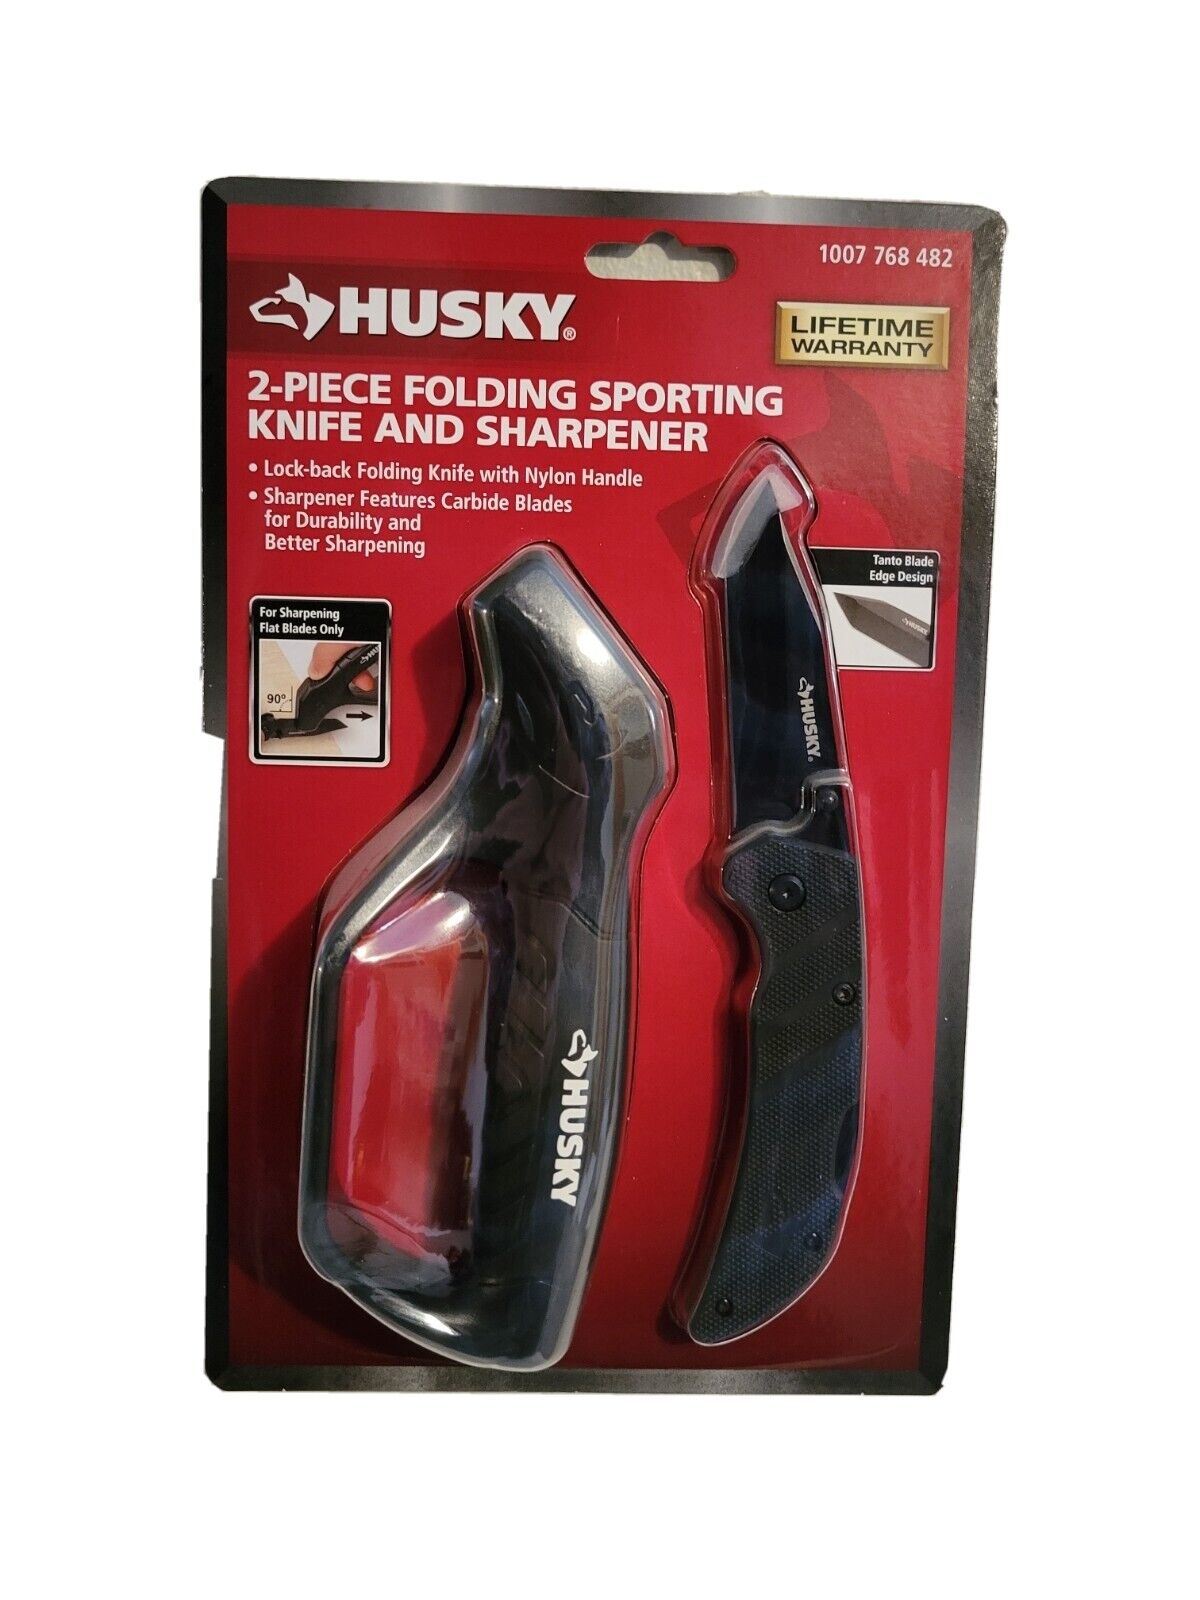 Husky 2-Piece Folding Sporting Knife and Sharpner New Sealed 